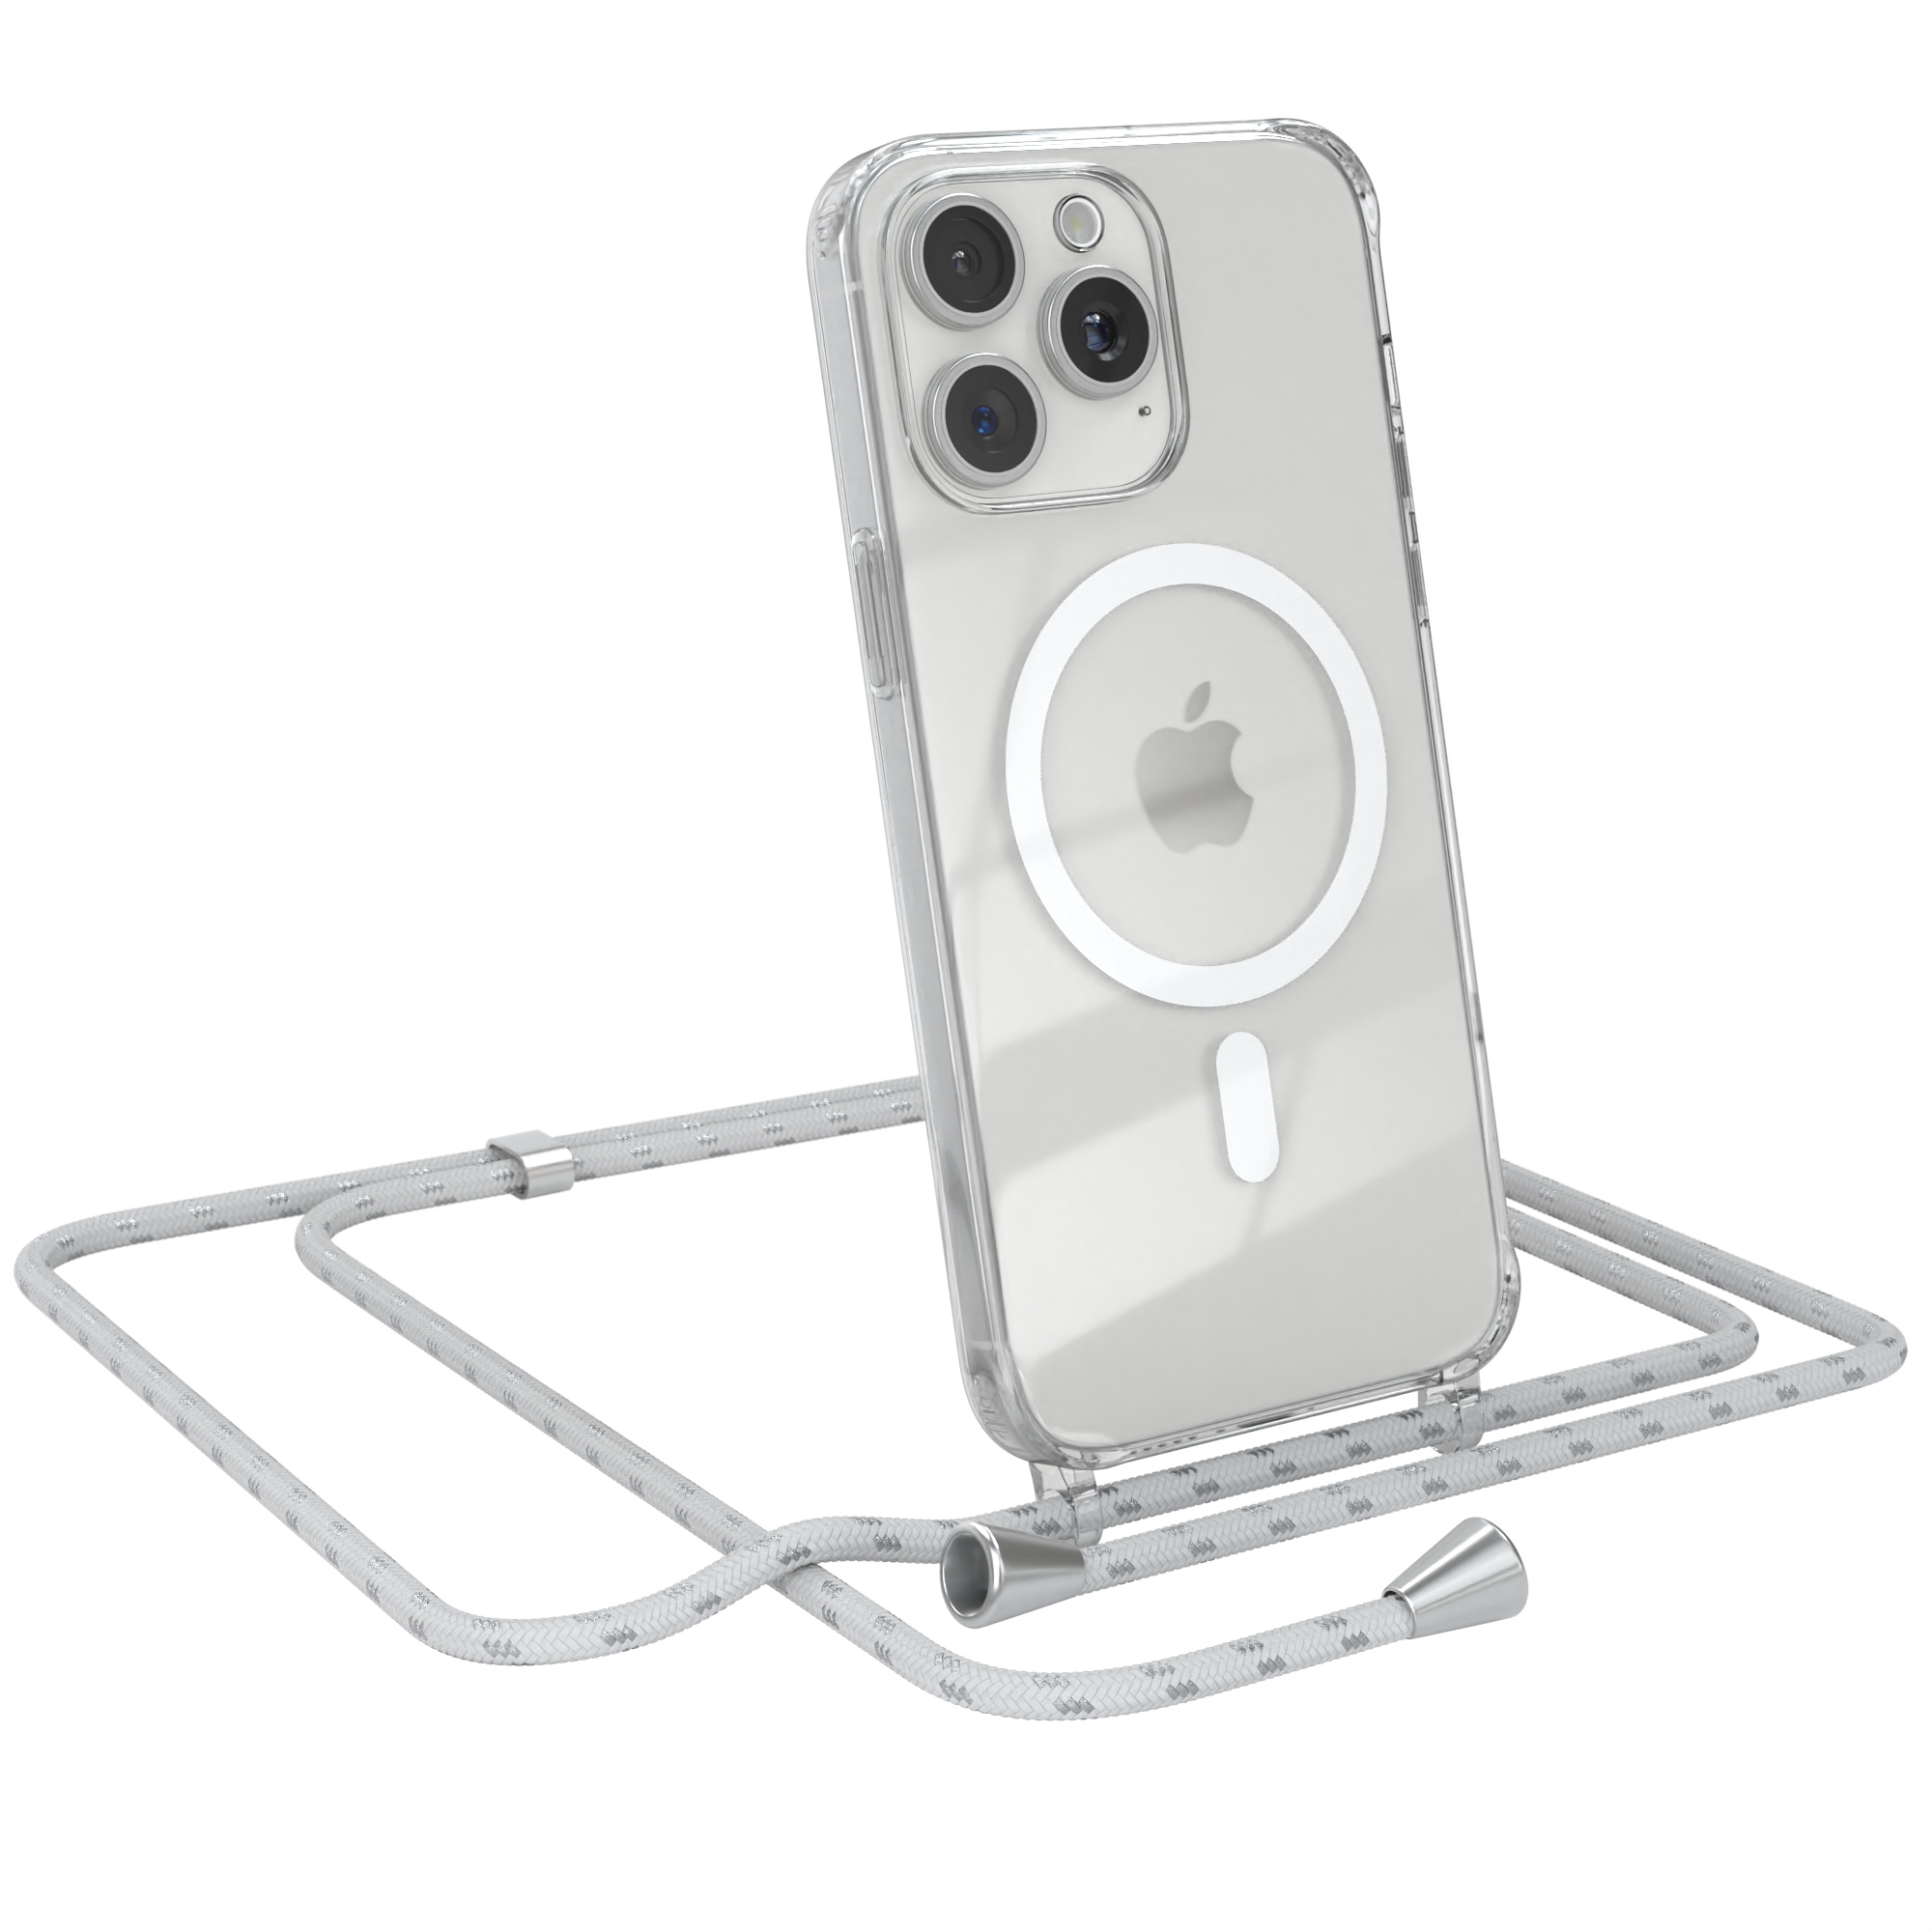 EAZY CASE Apple, Max, Hülle Weiß Magsafe Silber iPhone Handykette, Pro Clips 15 Umhängetasche, mit 